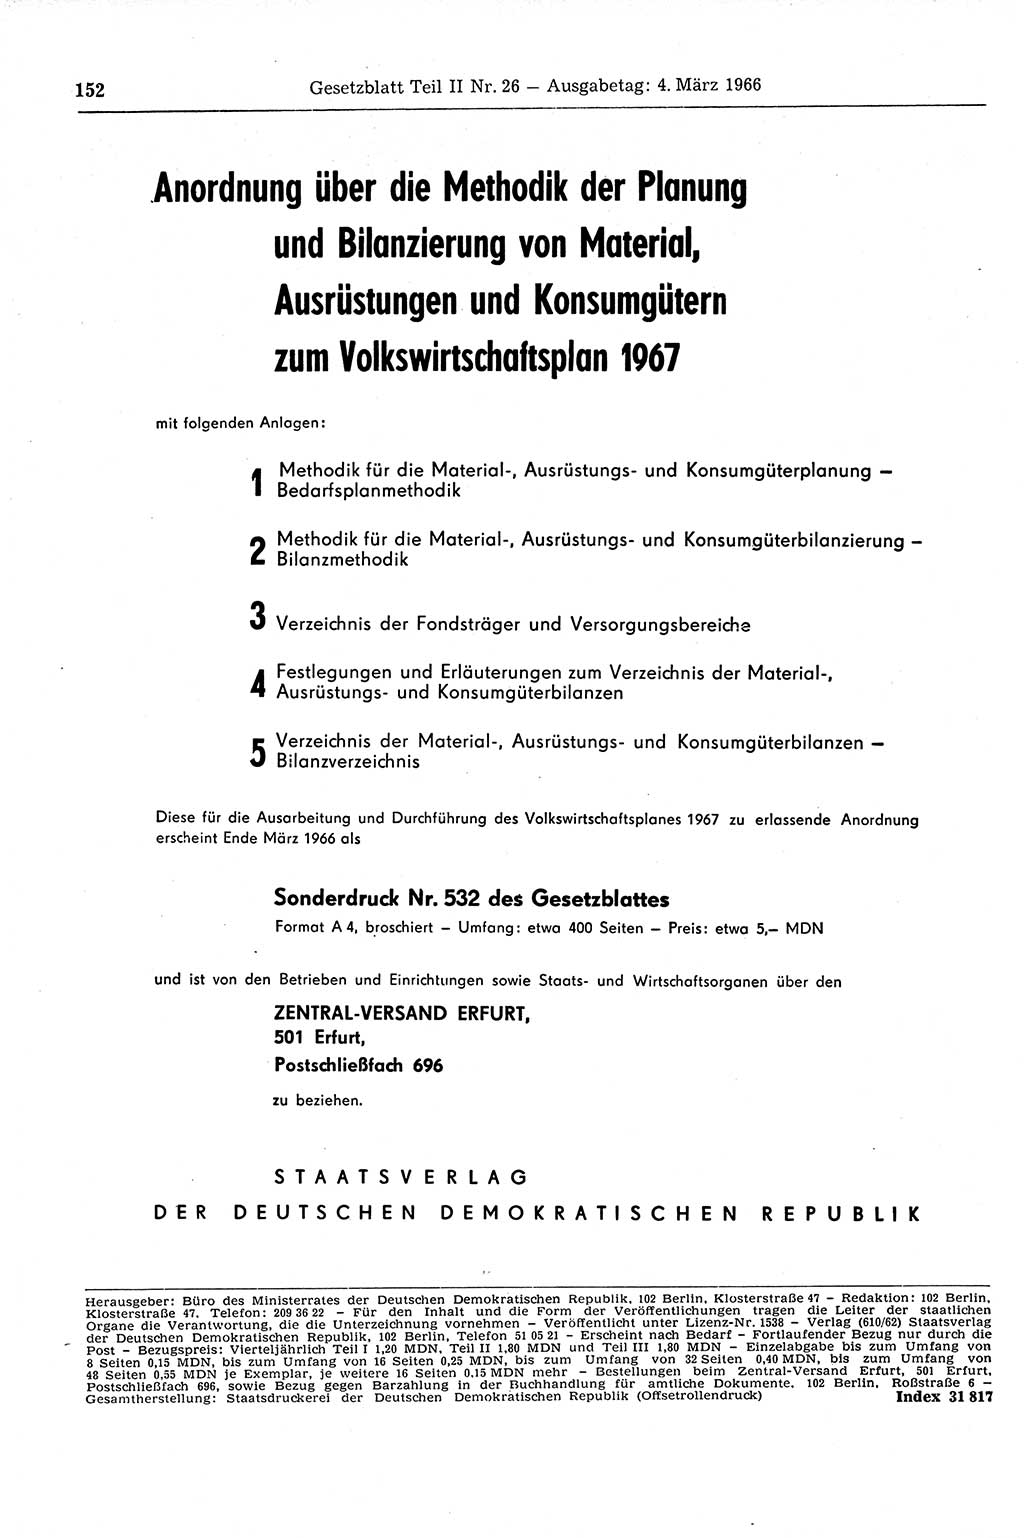 Gesetzblatt (GBl.) der Deutschen Demokratischen Republik (DDR) Teil ⅠⅠ 1966, Seite 152 (GBl. DDR ⅠⅠ 1966, S. 152)